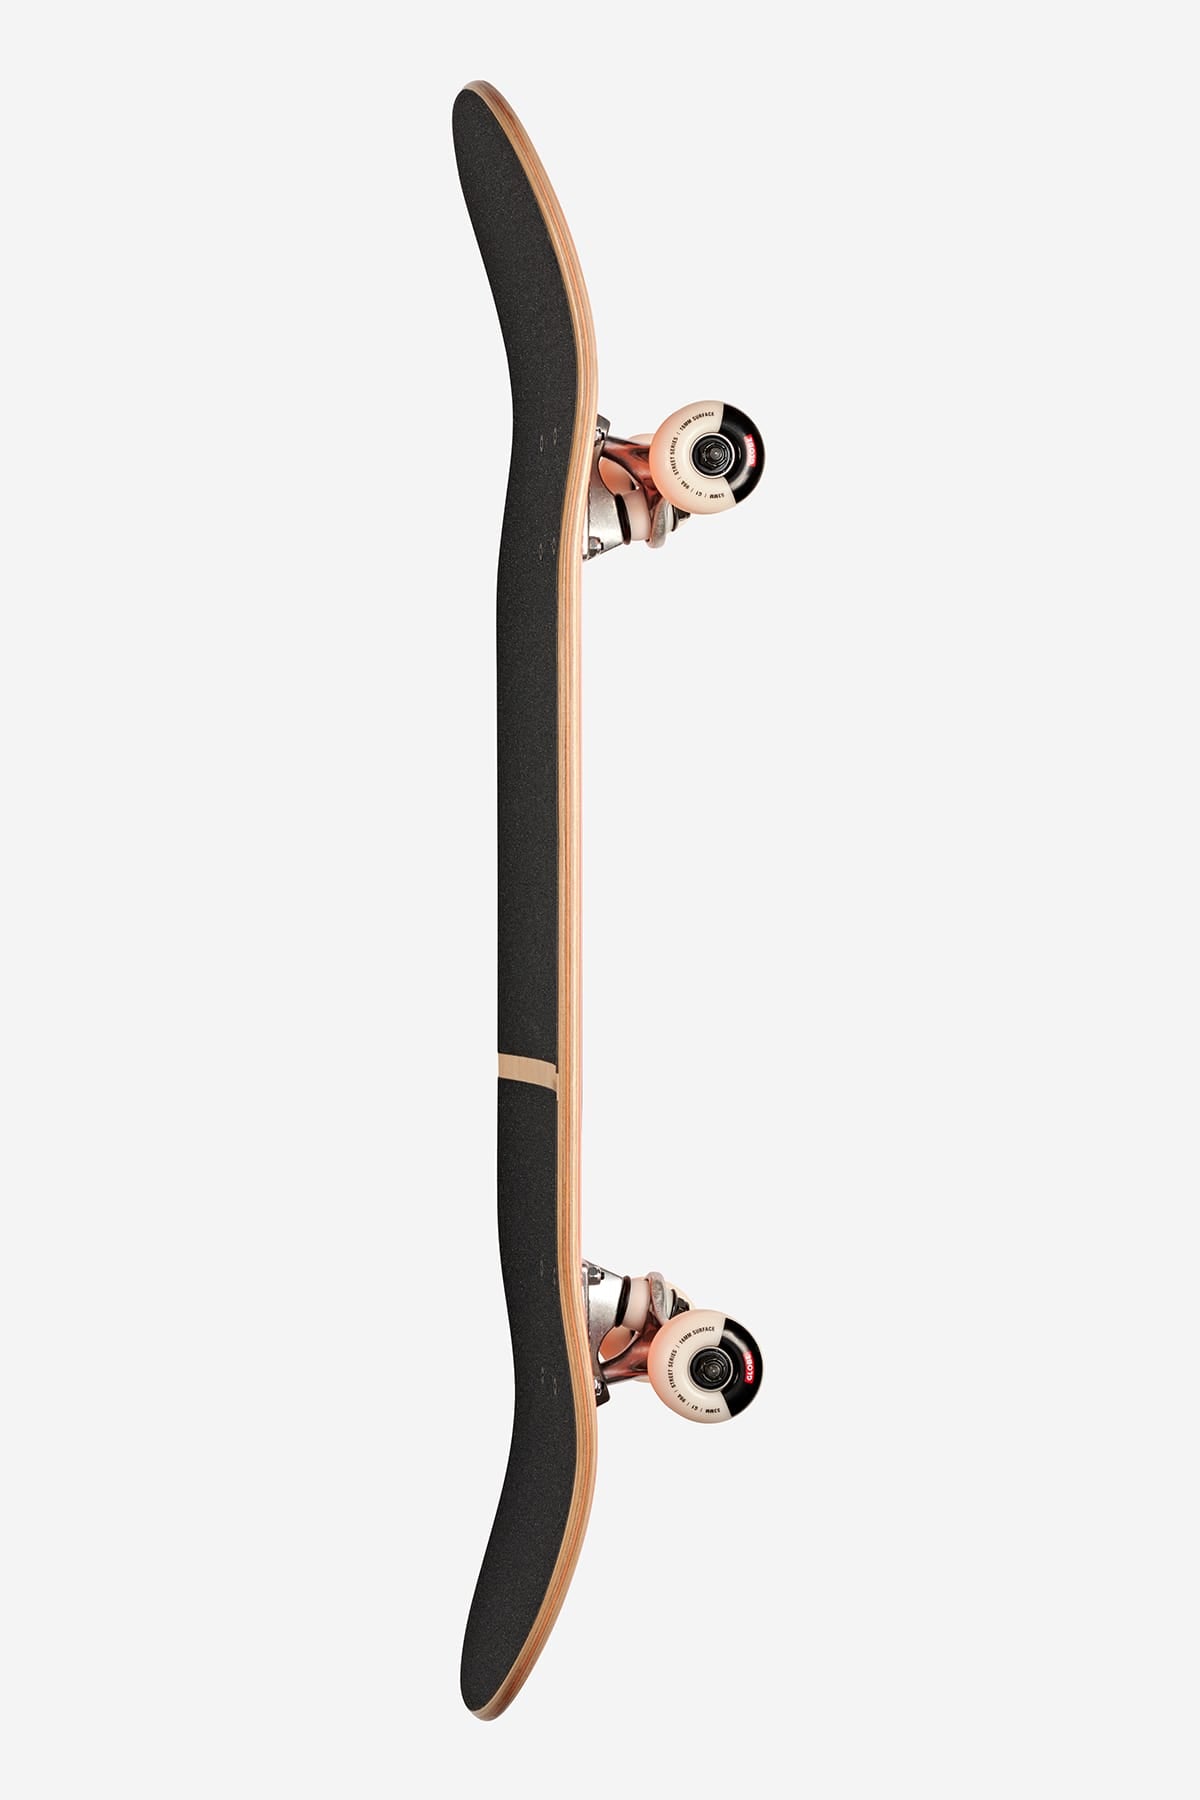 Globe - G1 Digital Nurture - Uomo fatto a macchina - 8.0" completo Skateboard